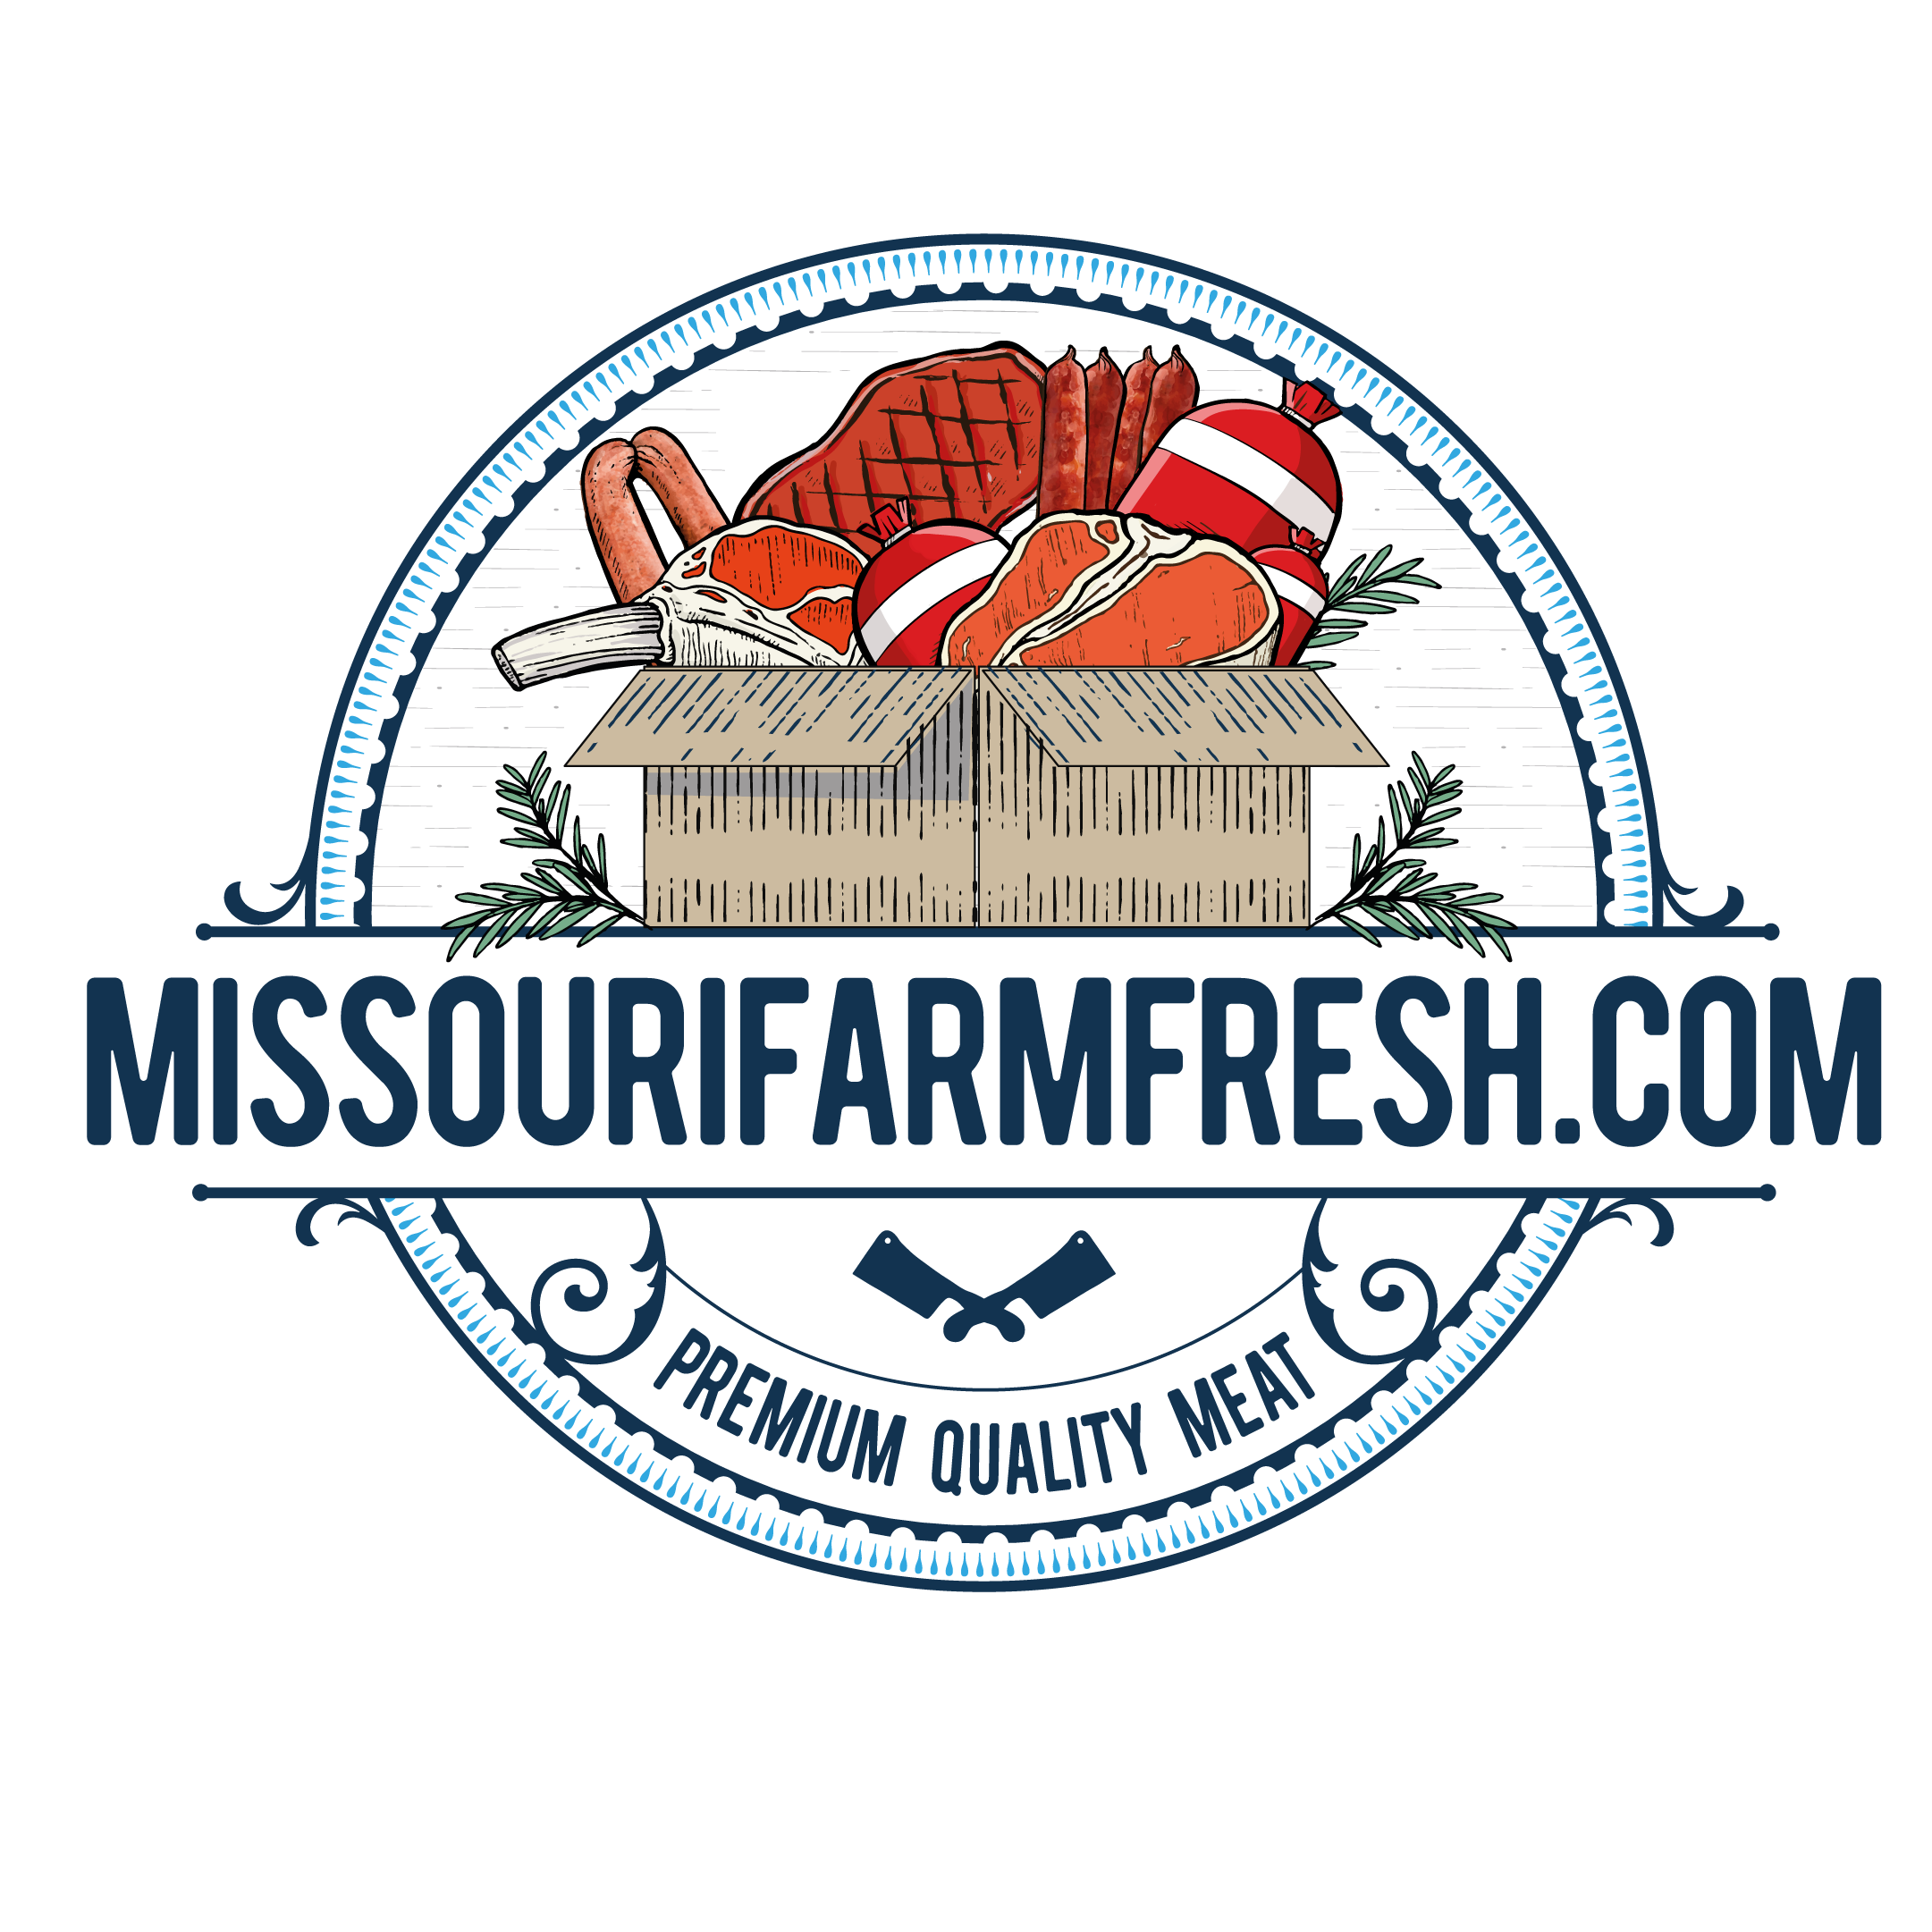 MissouriFarmFresh